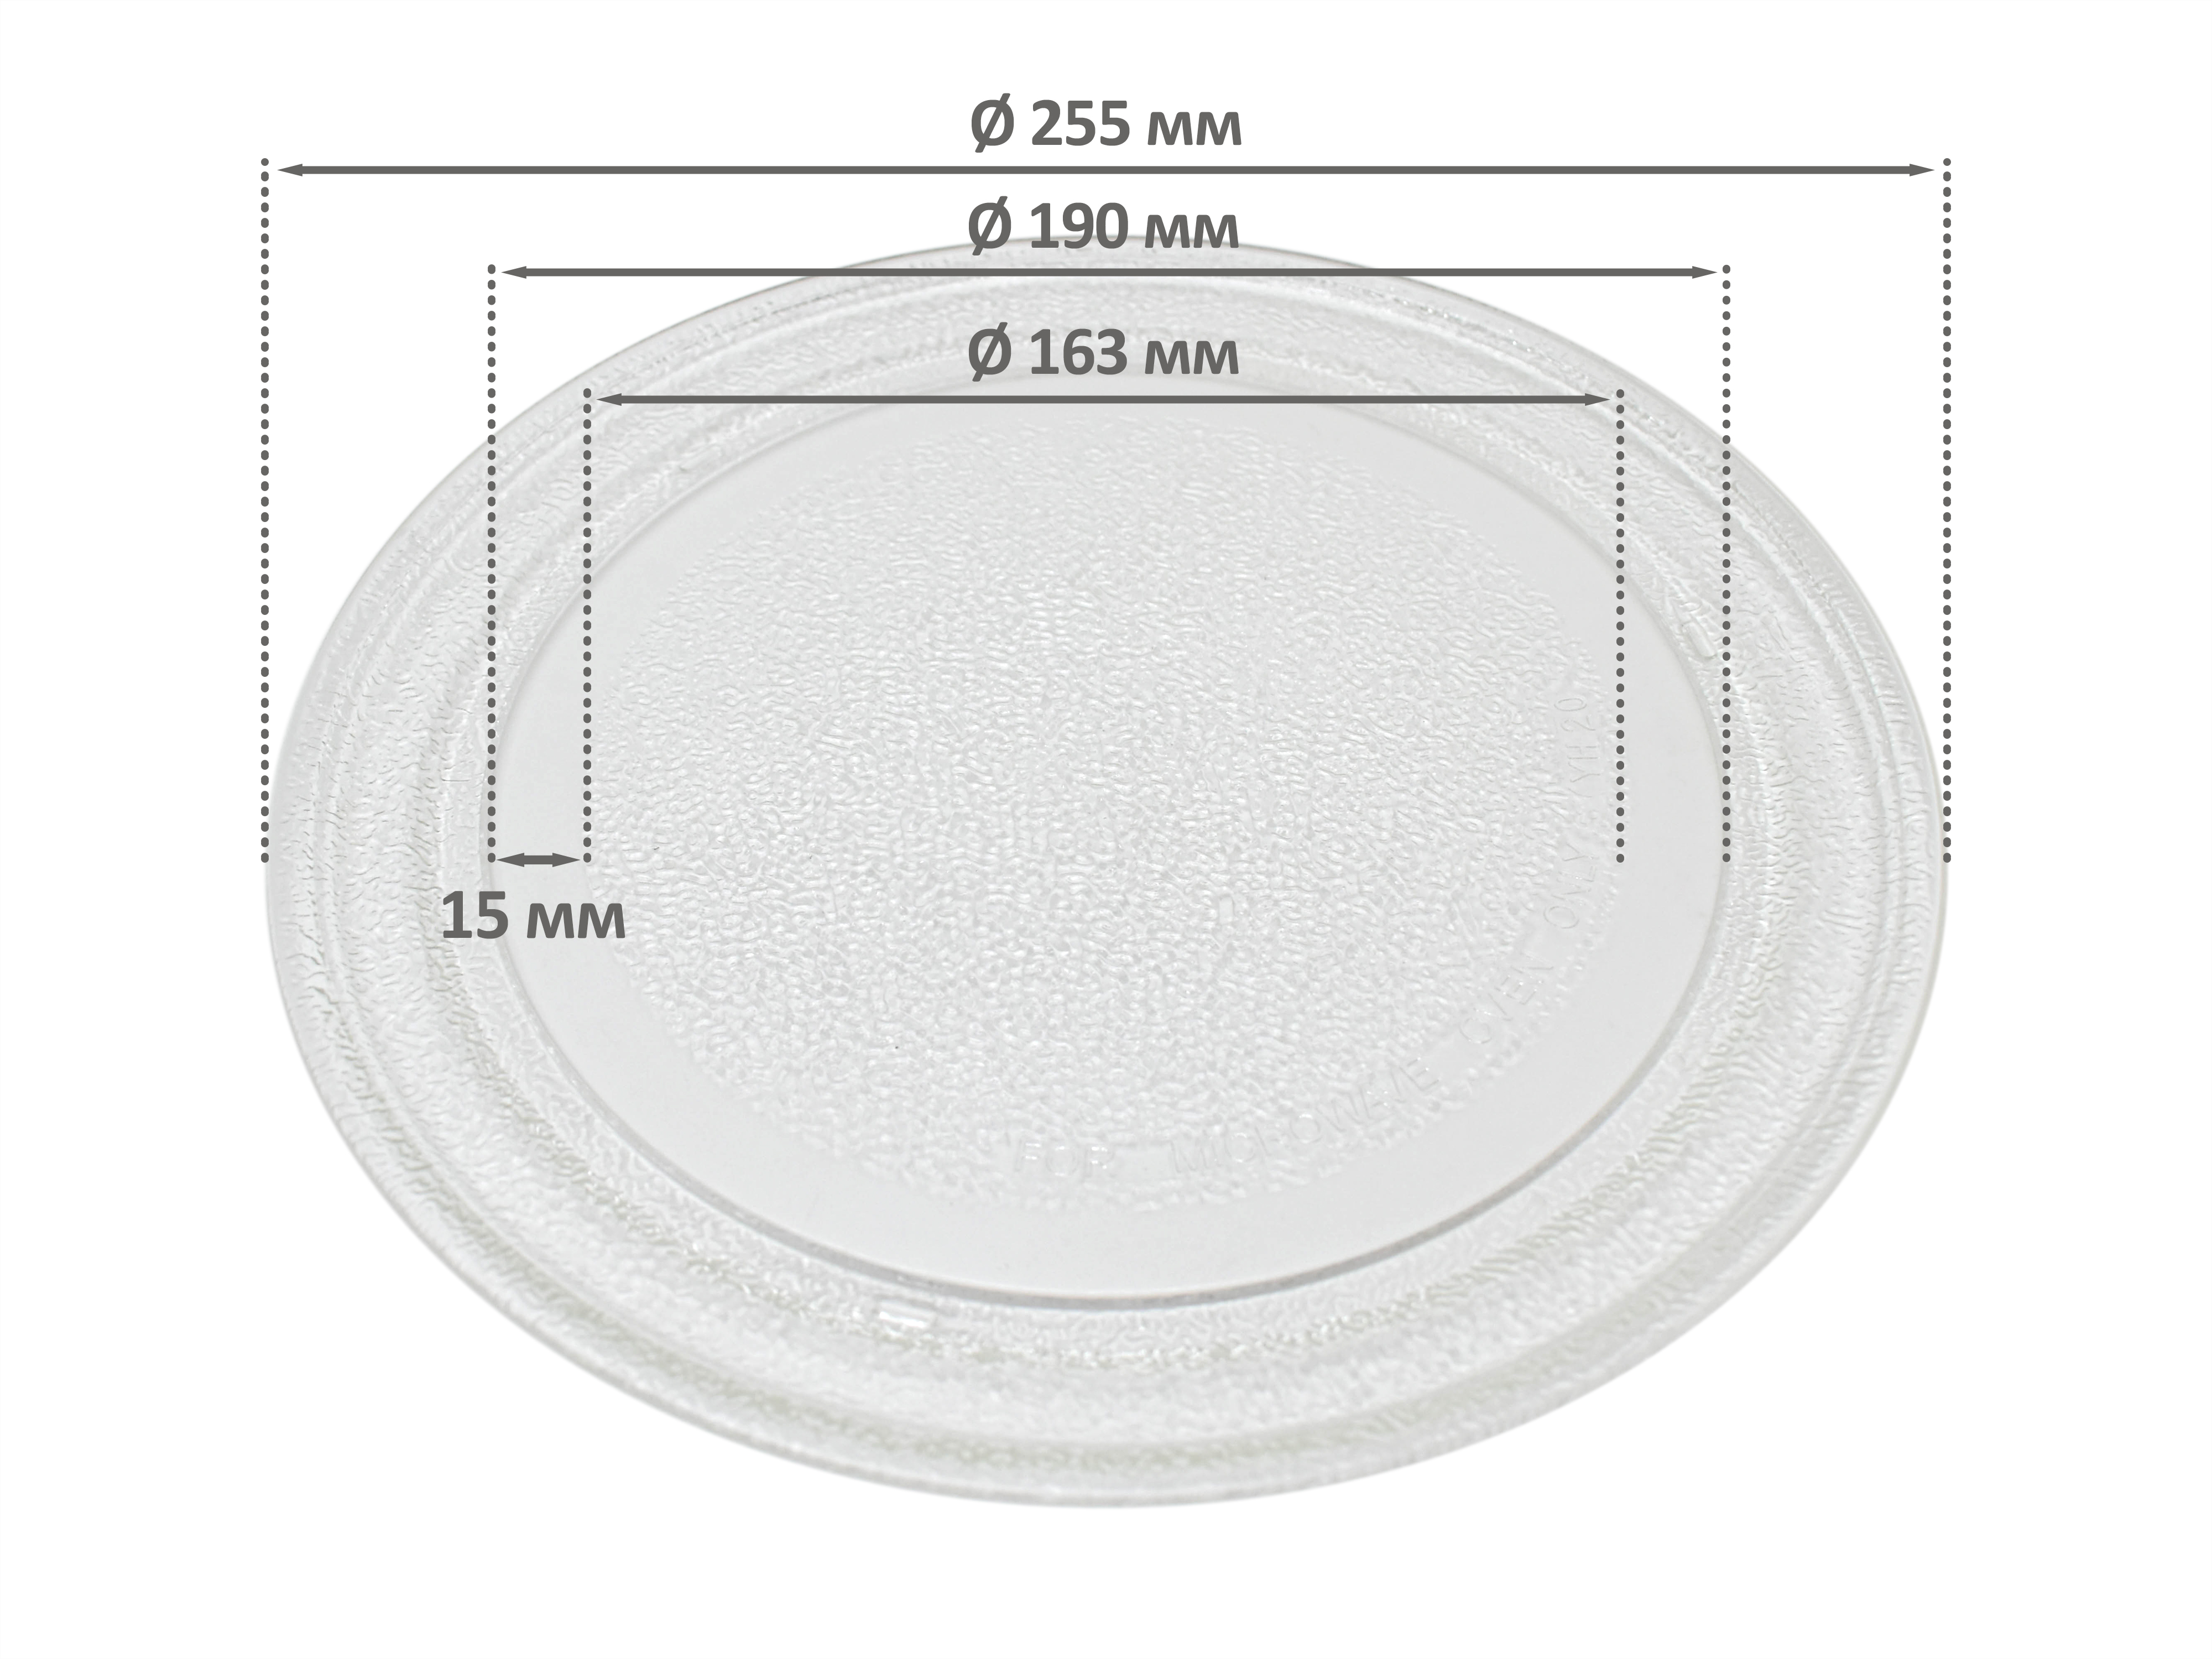 Тарелка для СВЧ для СВЧ микроволновой печи EKPARTS ER255BK тарелка для микроволновой печи rezer 245 мм